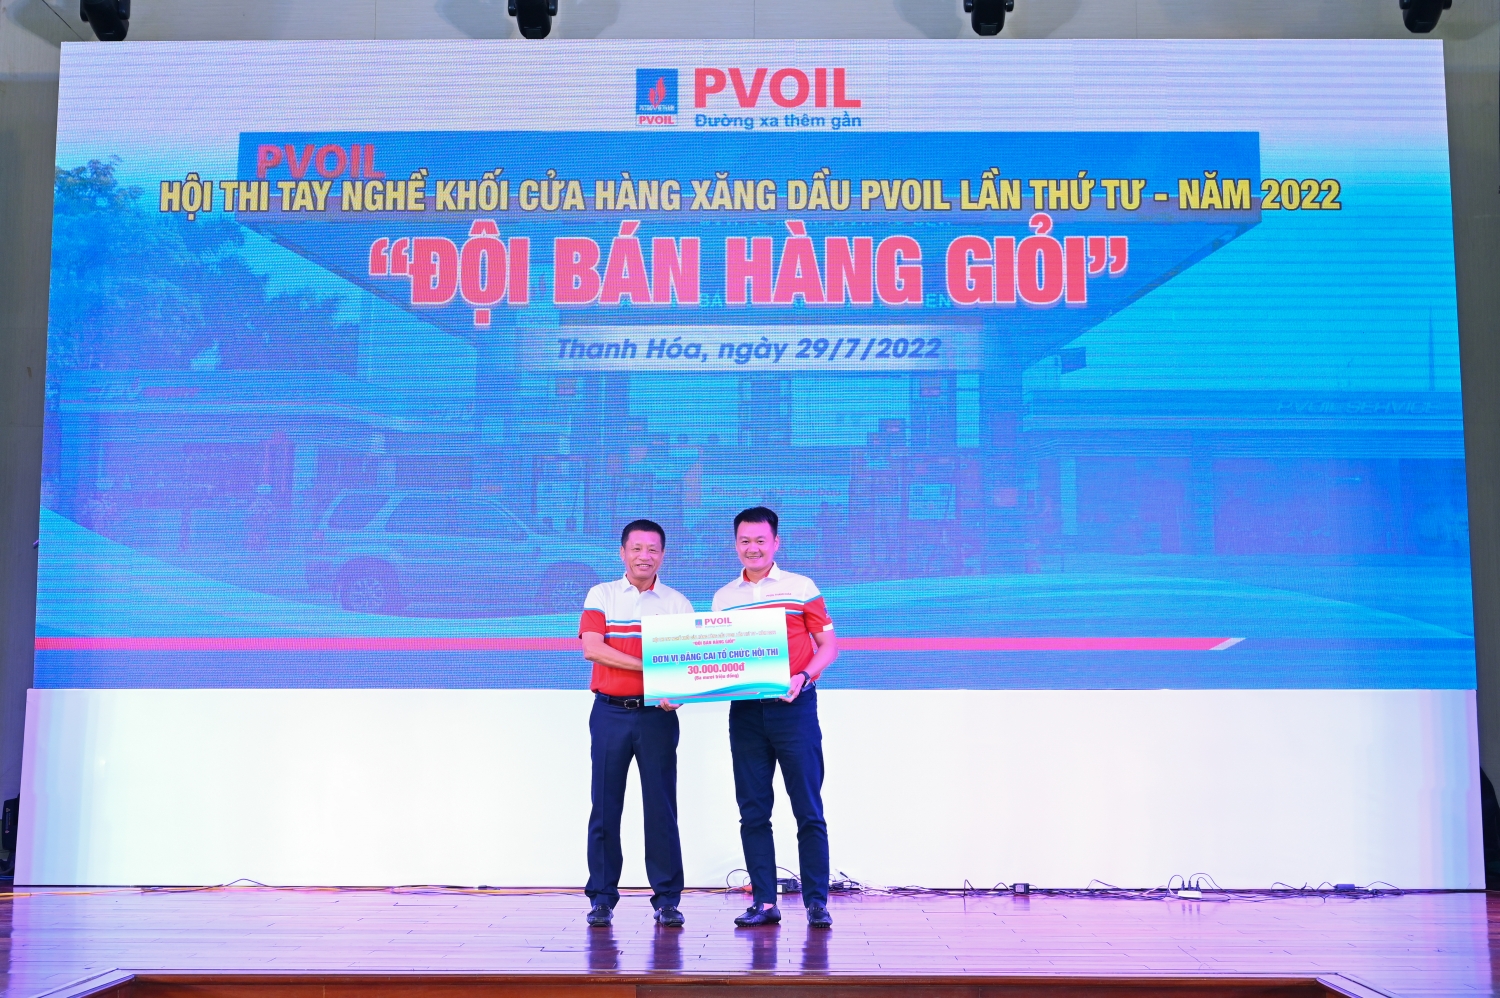 PVOIL tổ chức thành công Hội thi tay nghề khối CHXD “Đội bán hàng giỏi” lần thứ tư – năm 2022